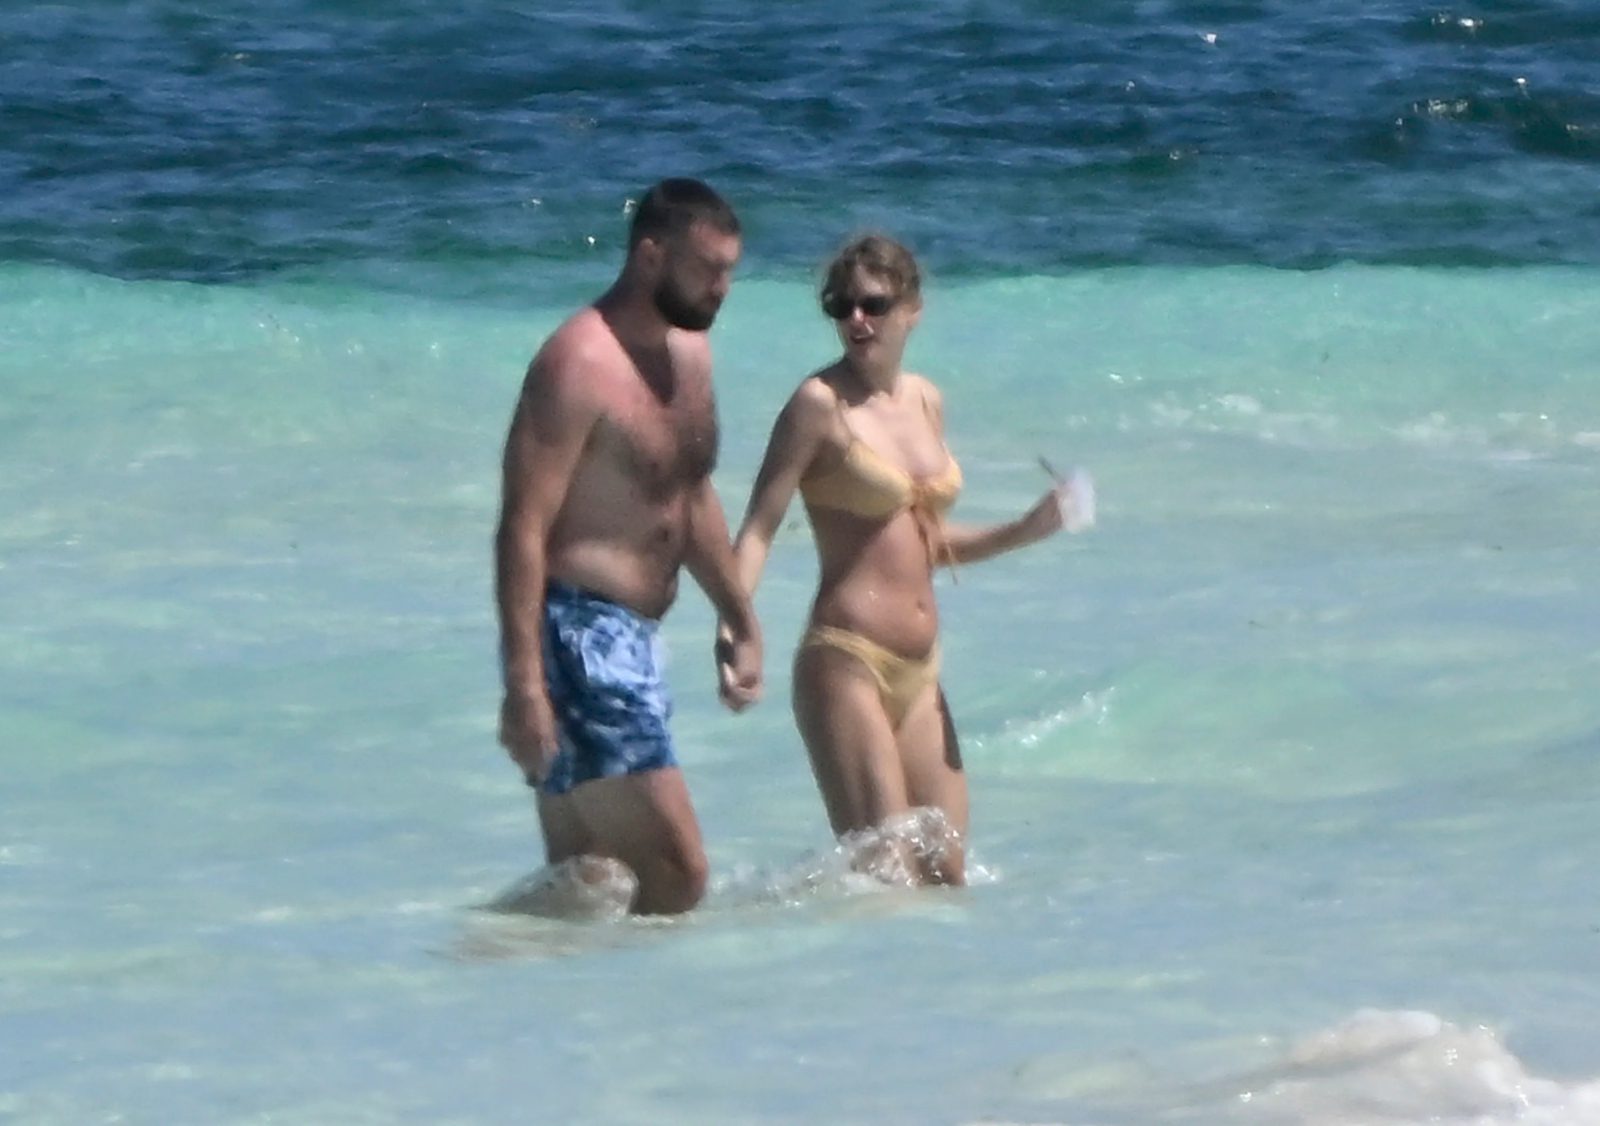 Папарацци последили за интимными забавами Тейлор Свифт и Трэвиса Кейси на Багамах. Топ фото Тейлор Свифт в бикини